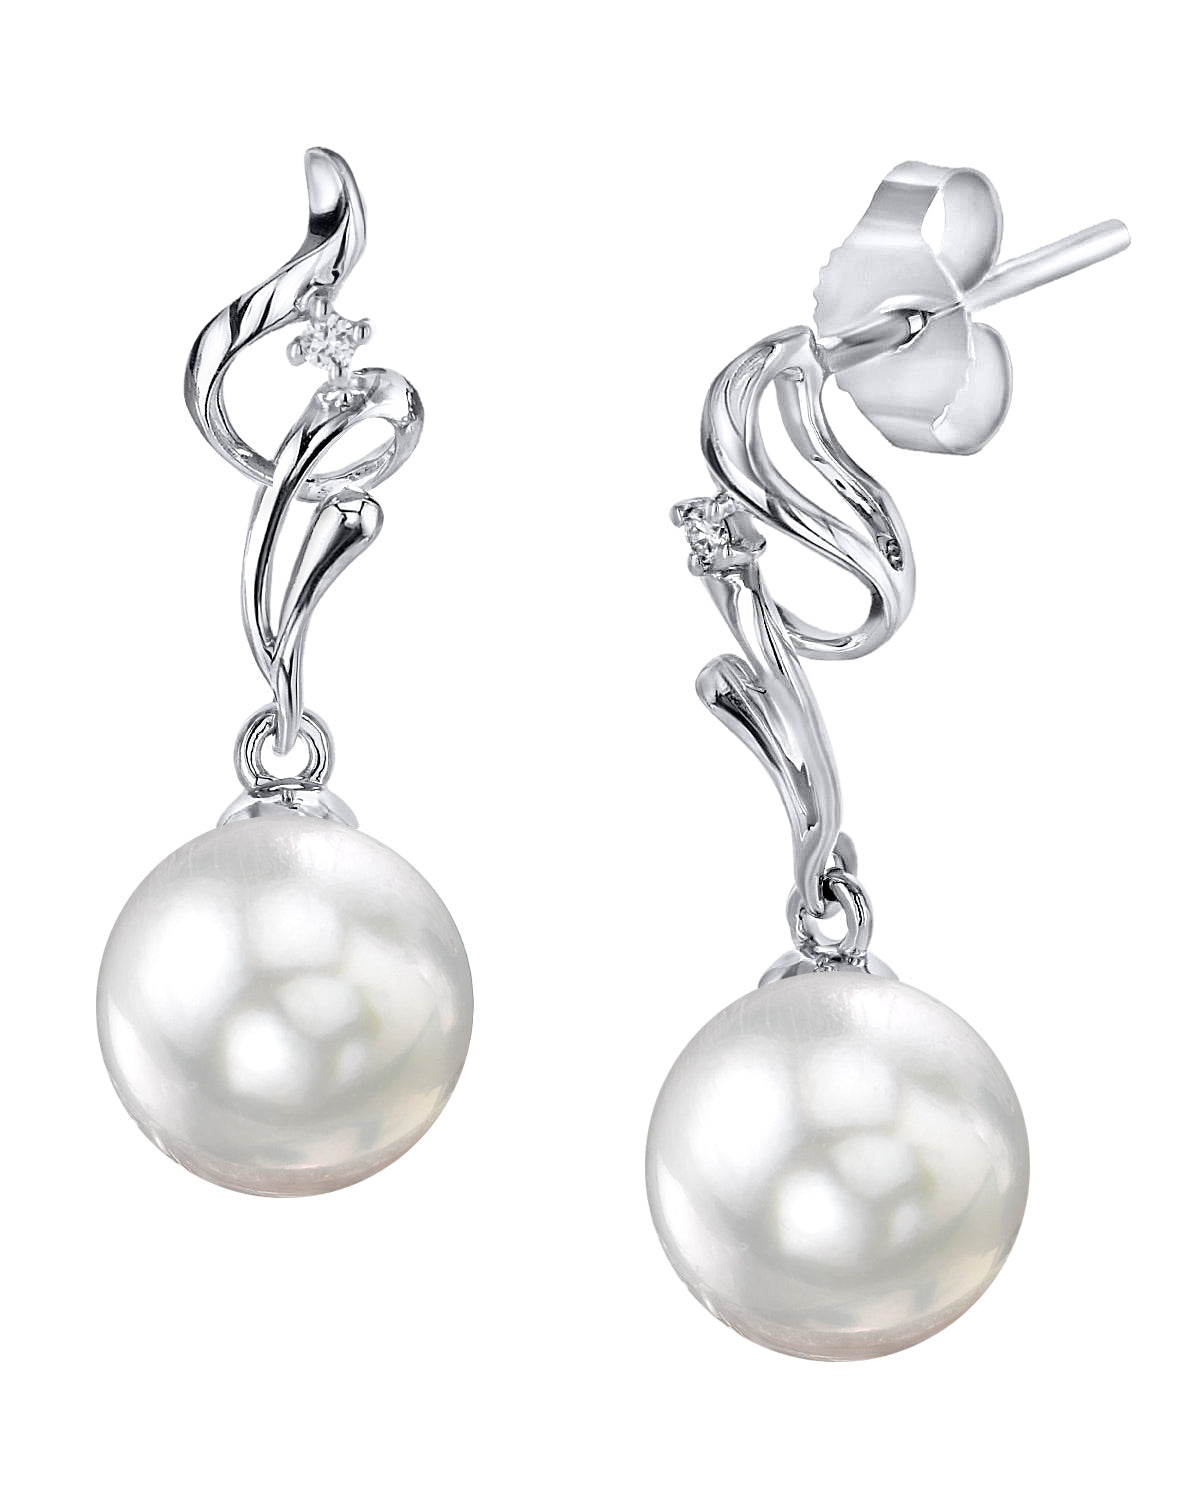 White South Sea Pearl & Diamond Aria Earrings